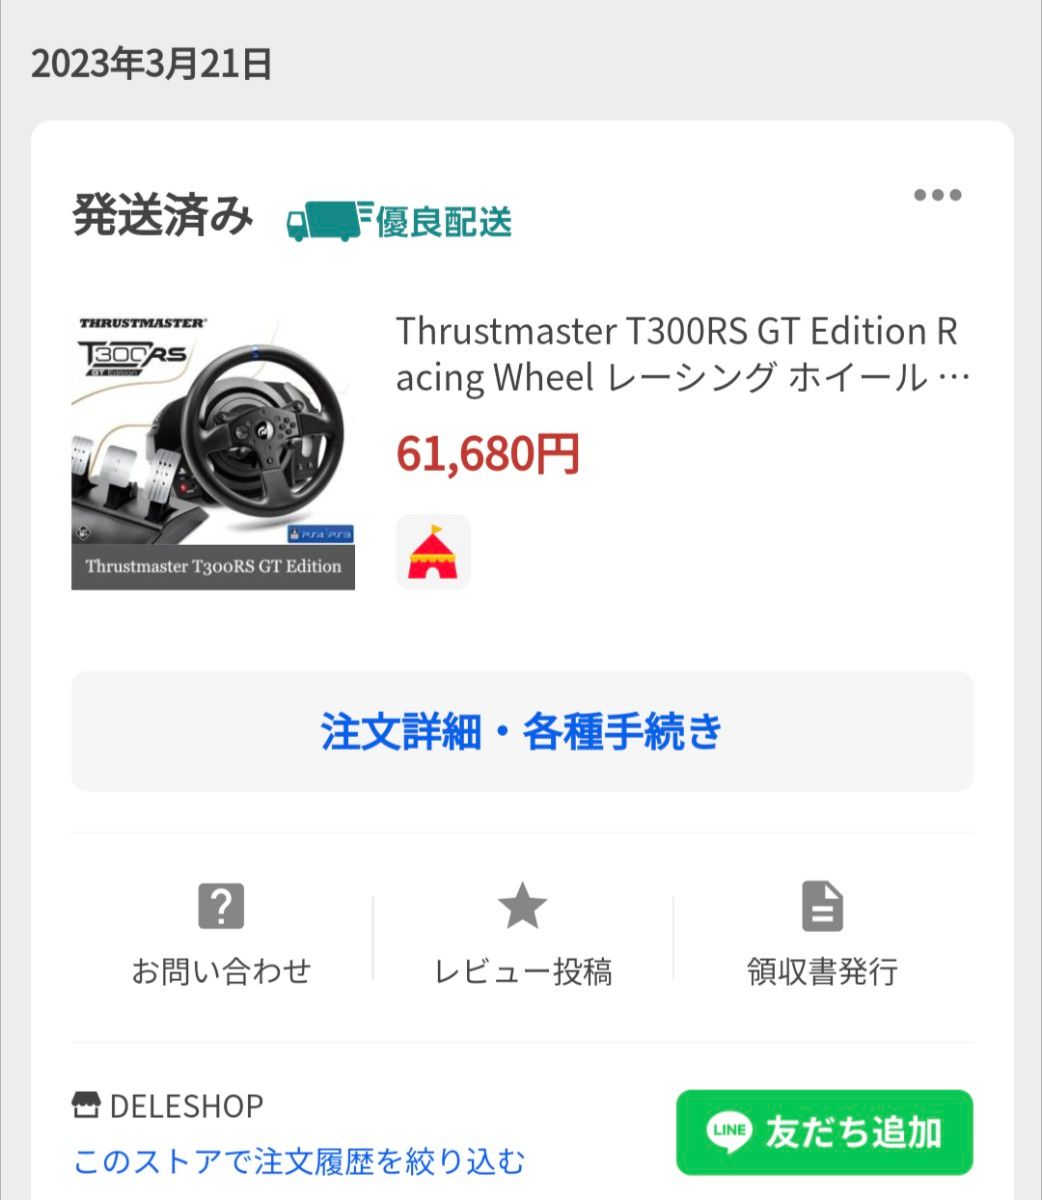 【昨年購入】Thrustmaster T300RS GT Edition  スラストマスター  ハンコン